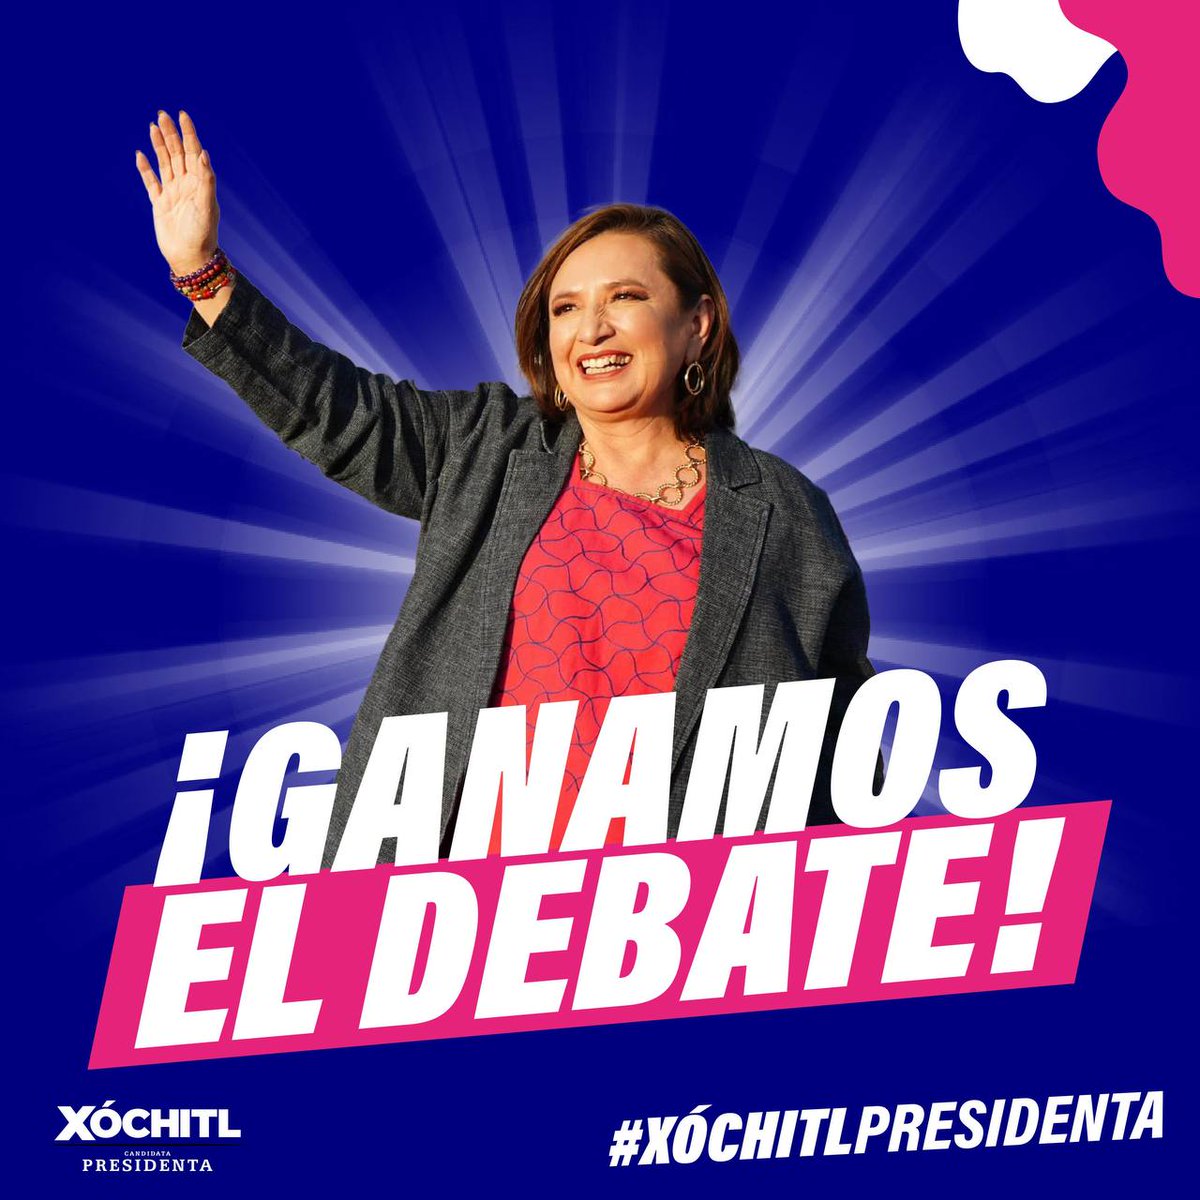 Hoy ganaron las propuestas y la razón en el #DebateINE, con @XochitlGalvez destacando como ganadora. Su visión y compromiso con el cambio que México necesita, son el camino seguro hacia el futuro. #Xóchitl2024 #DebatePresidencial2024